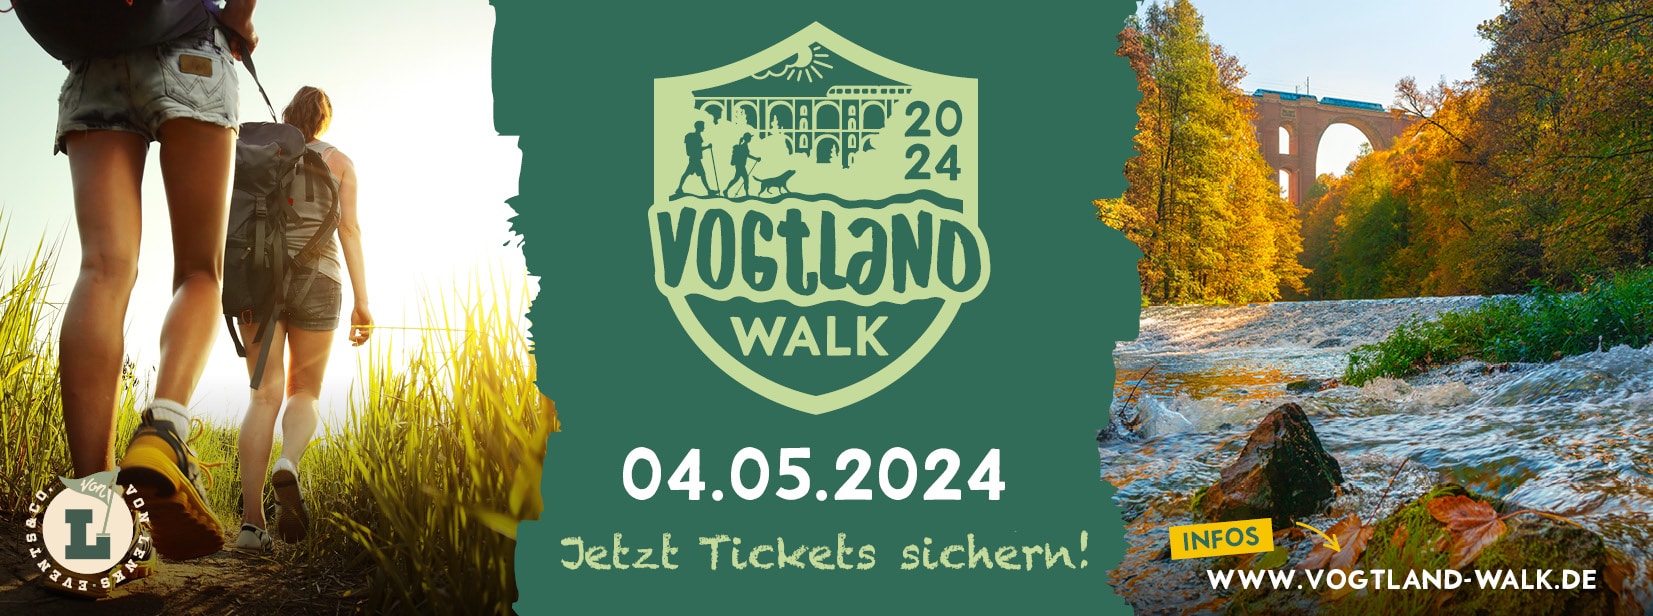 Vogtland Walk 2024 - Das Wander-Event unterstützt von Casida